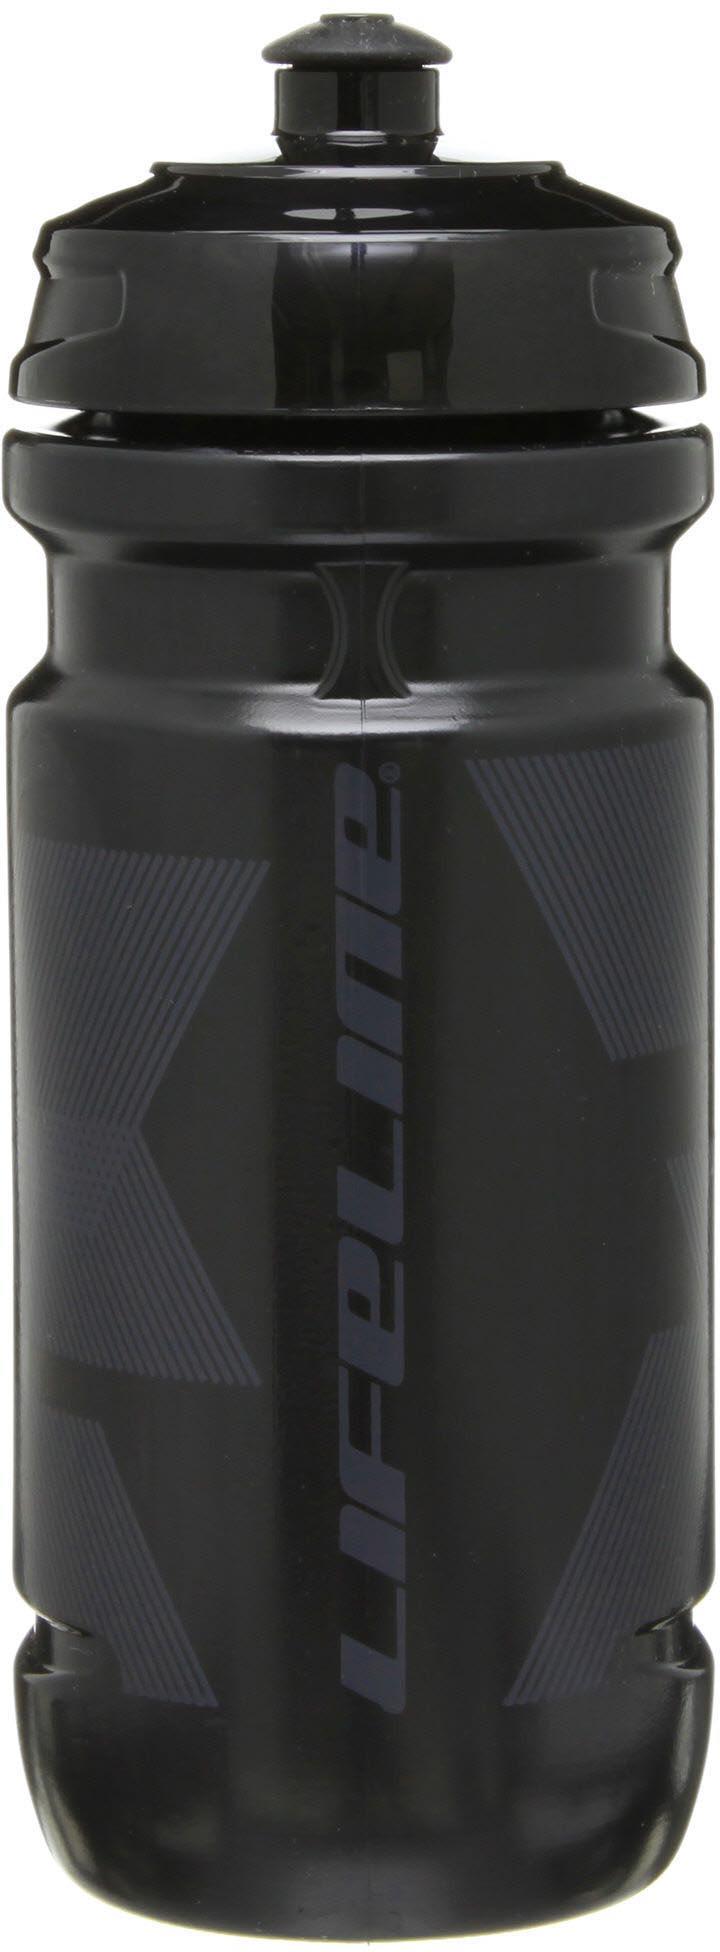 Lifeline Water Bottle 600ml - Black/black